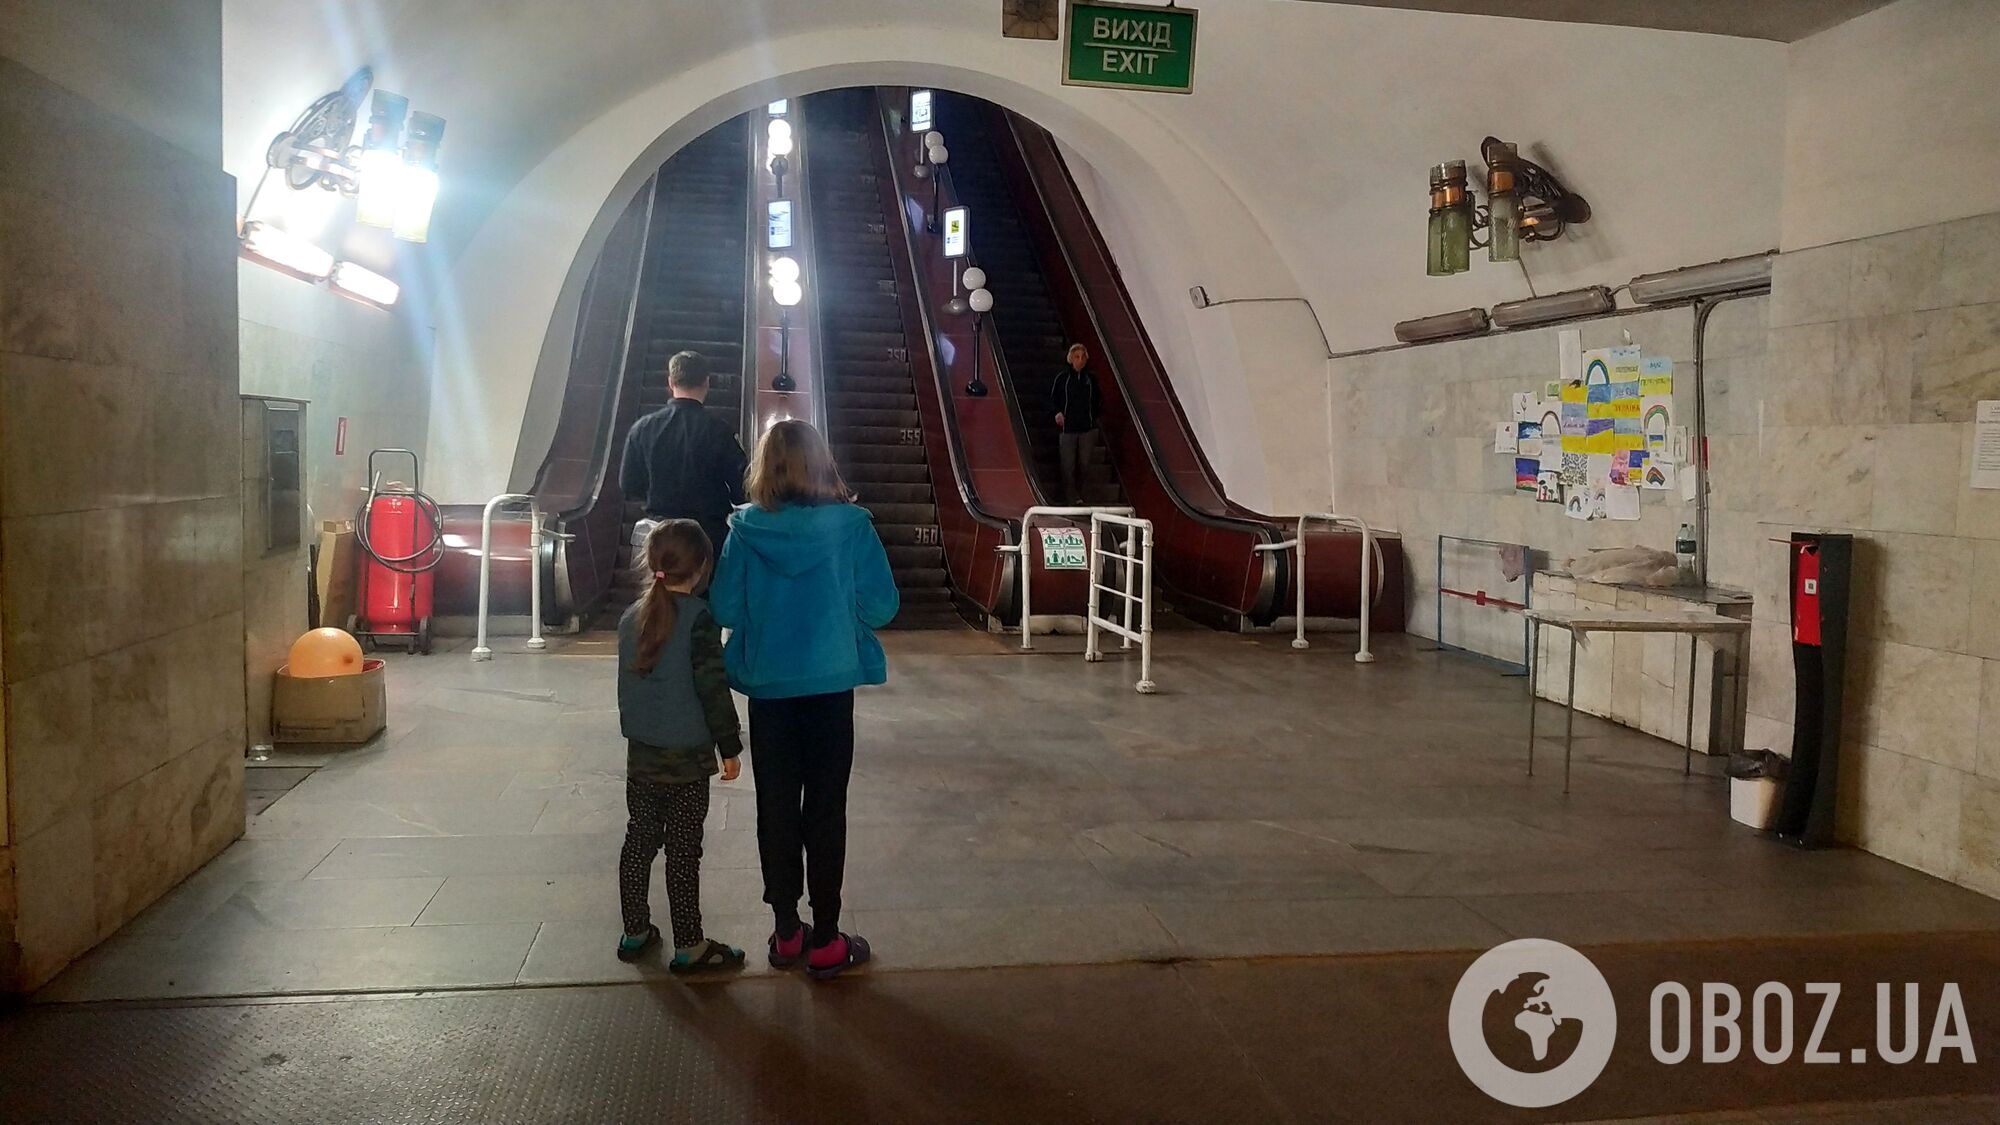 Станция метро в Харькове, где живут люди